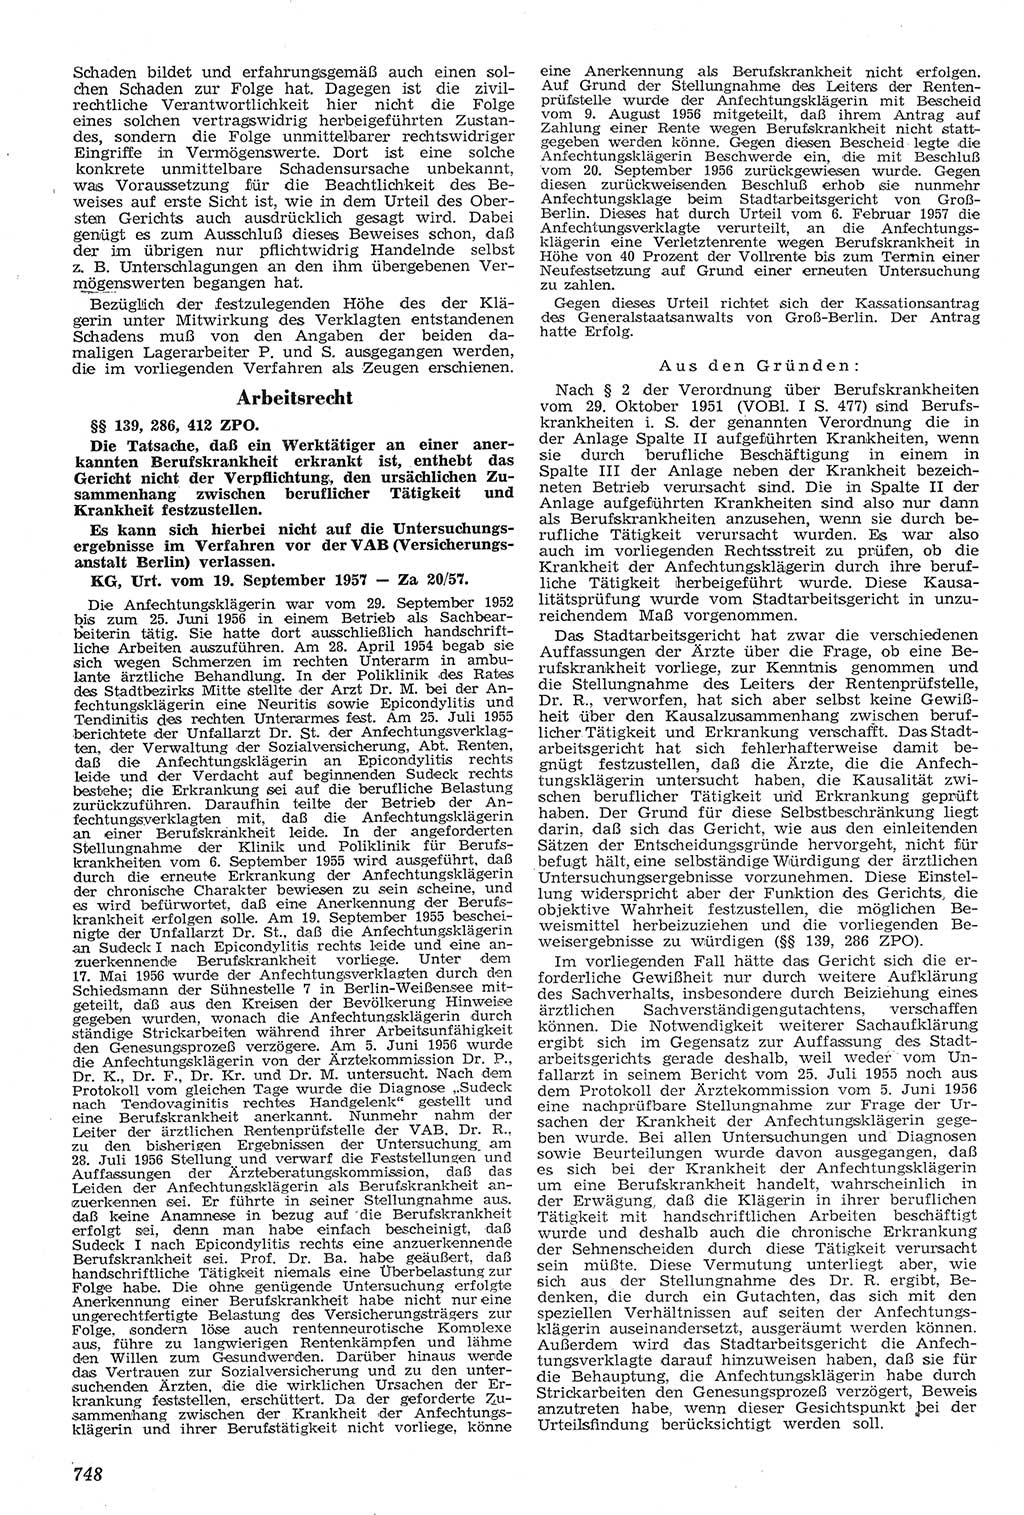 Neue Justiz (NJ), Zeitschrift für Recht und Rechtswissenschaft [Deutsche Demokratische Republik (DDR)], 11. Jahrgang 1957, Seite 748 (NJ DDR 1957, S. 748)